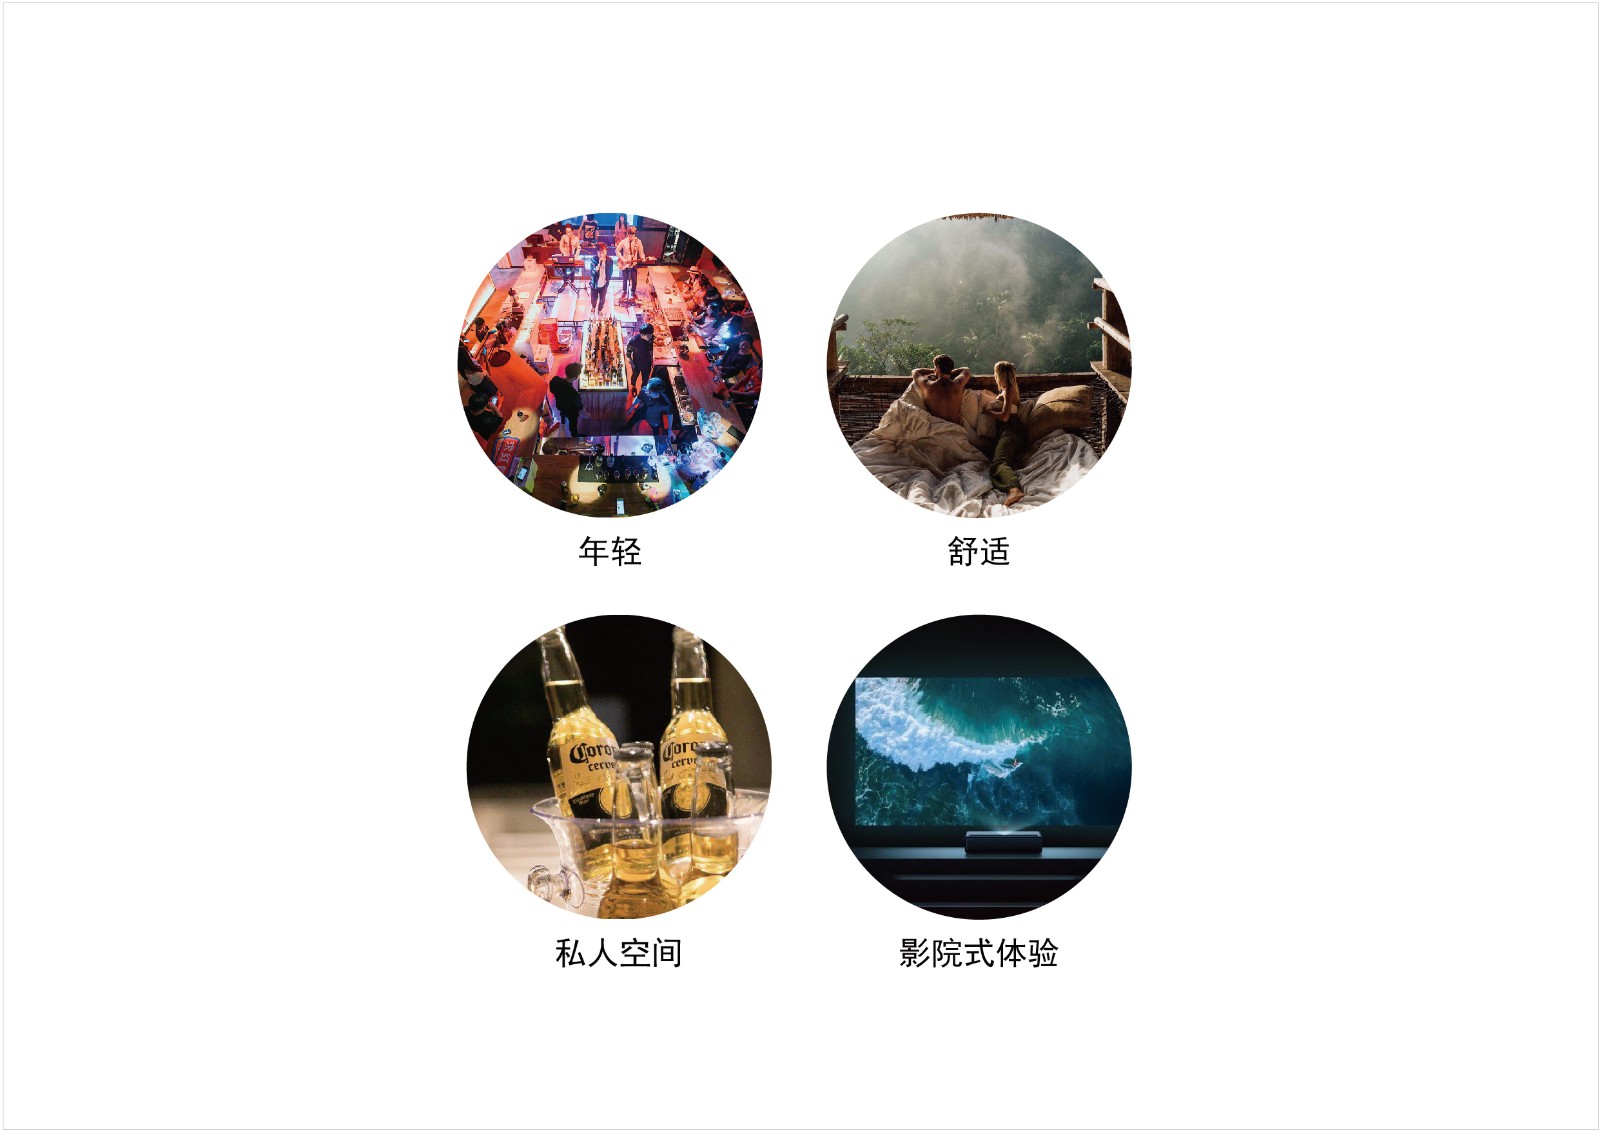 裕州-主题酒店及足浴养生馆logo方案1 20201113-01.jpg